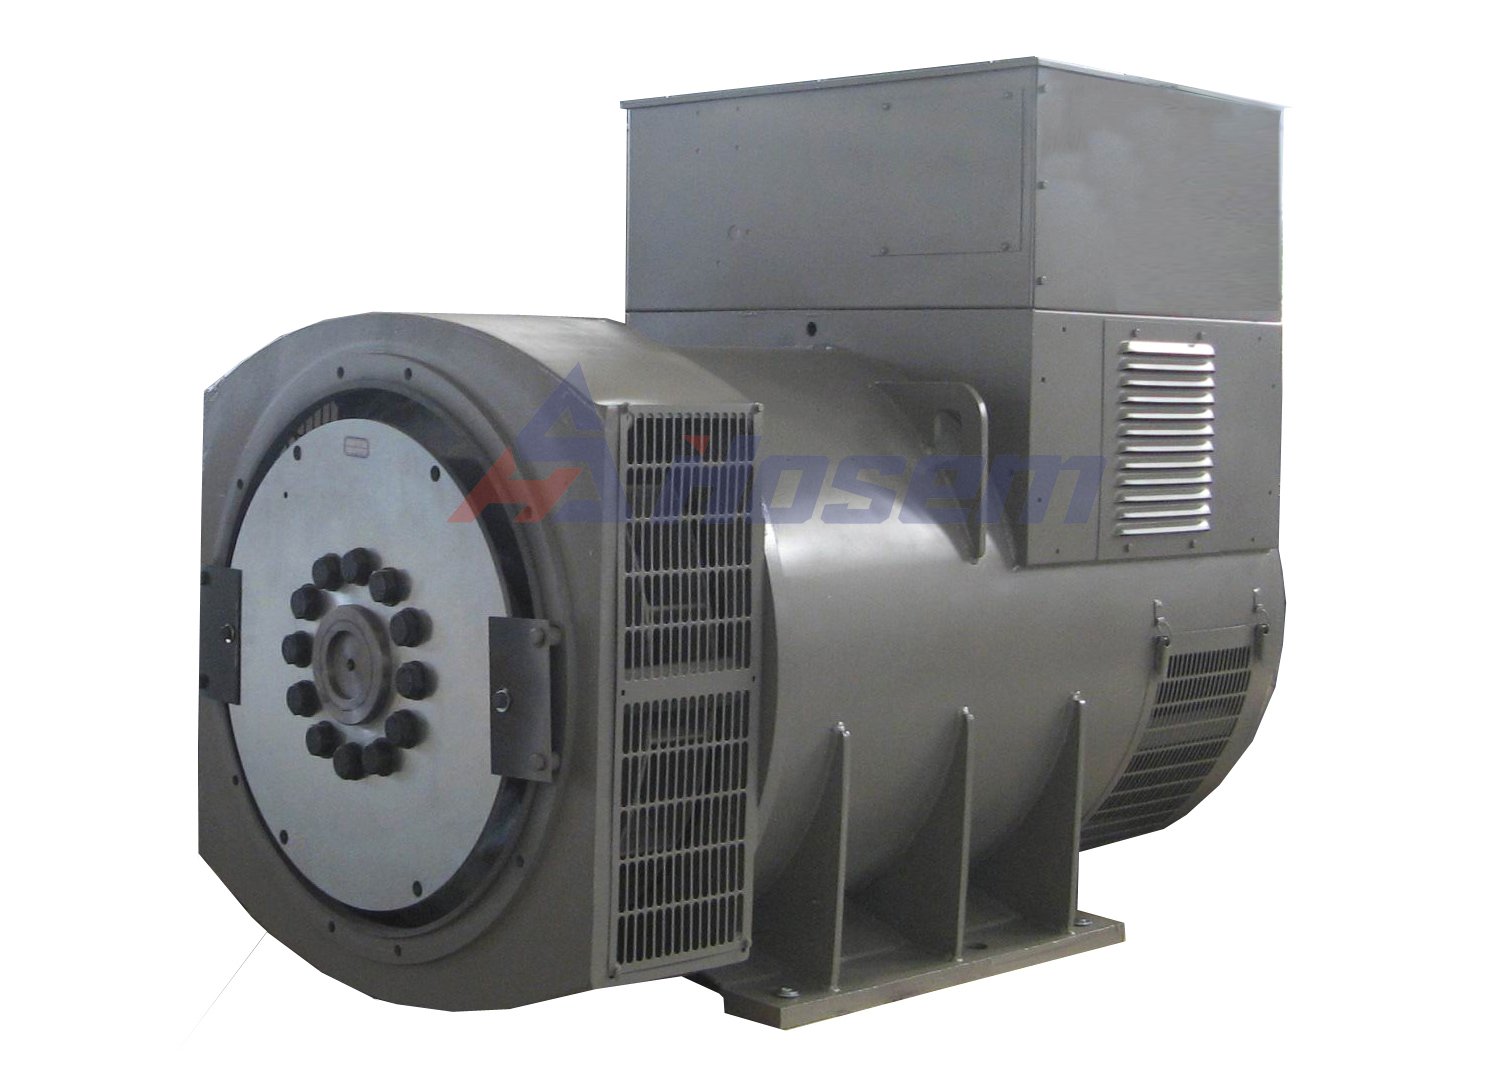 Bezszczotkowy alternator 60 Hz 10kva - 1650KVA dla zestawu generatora